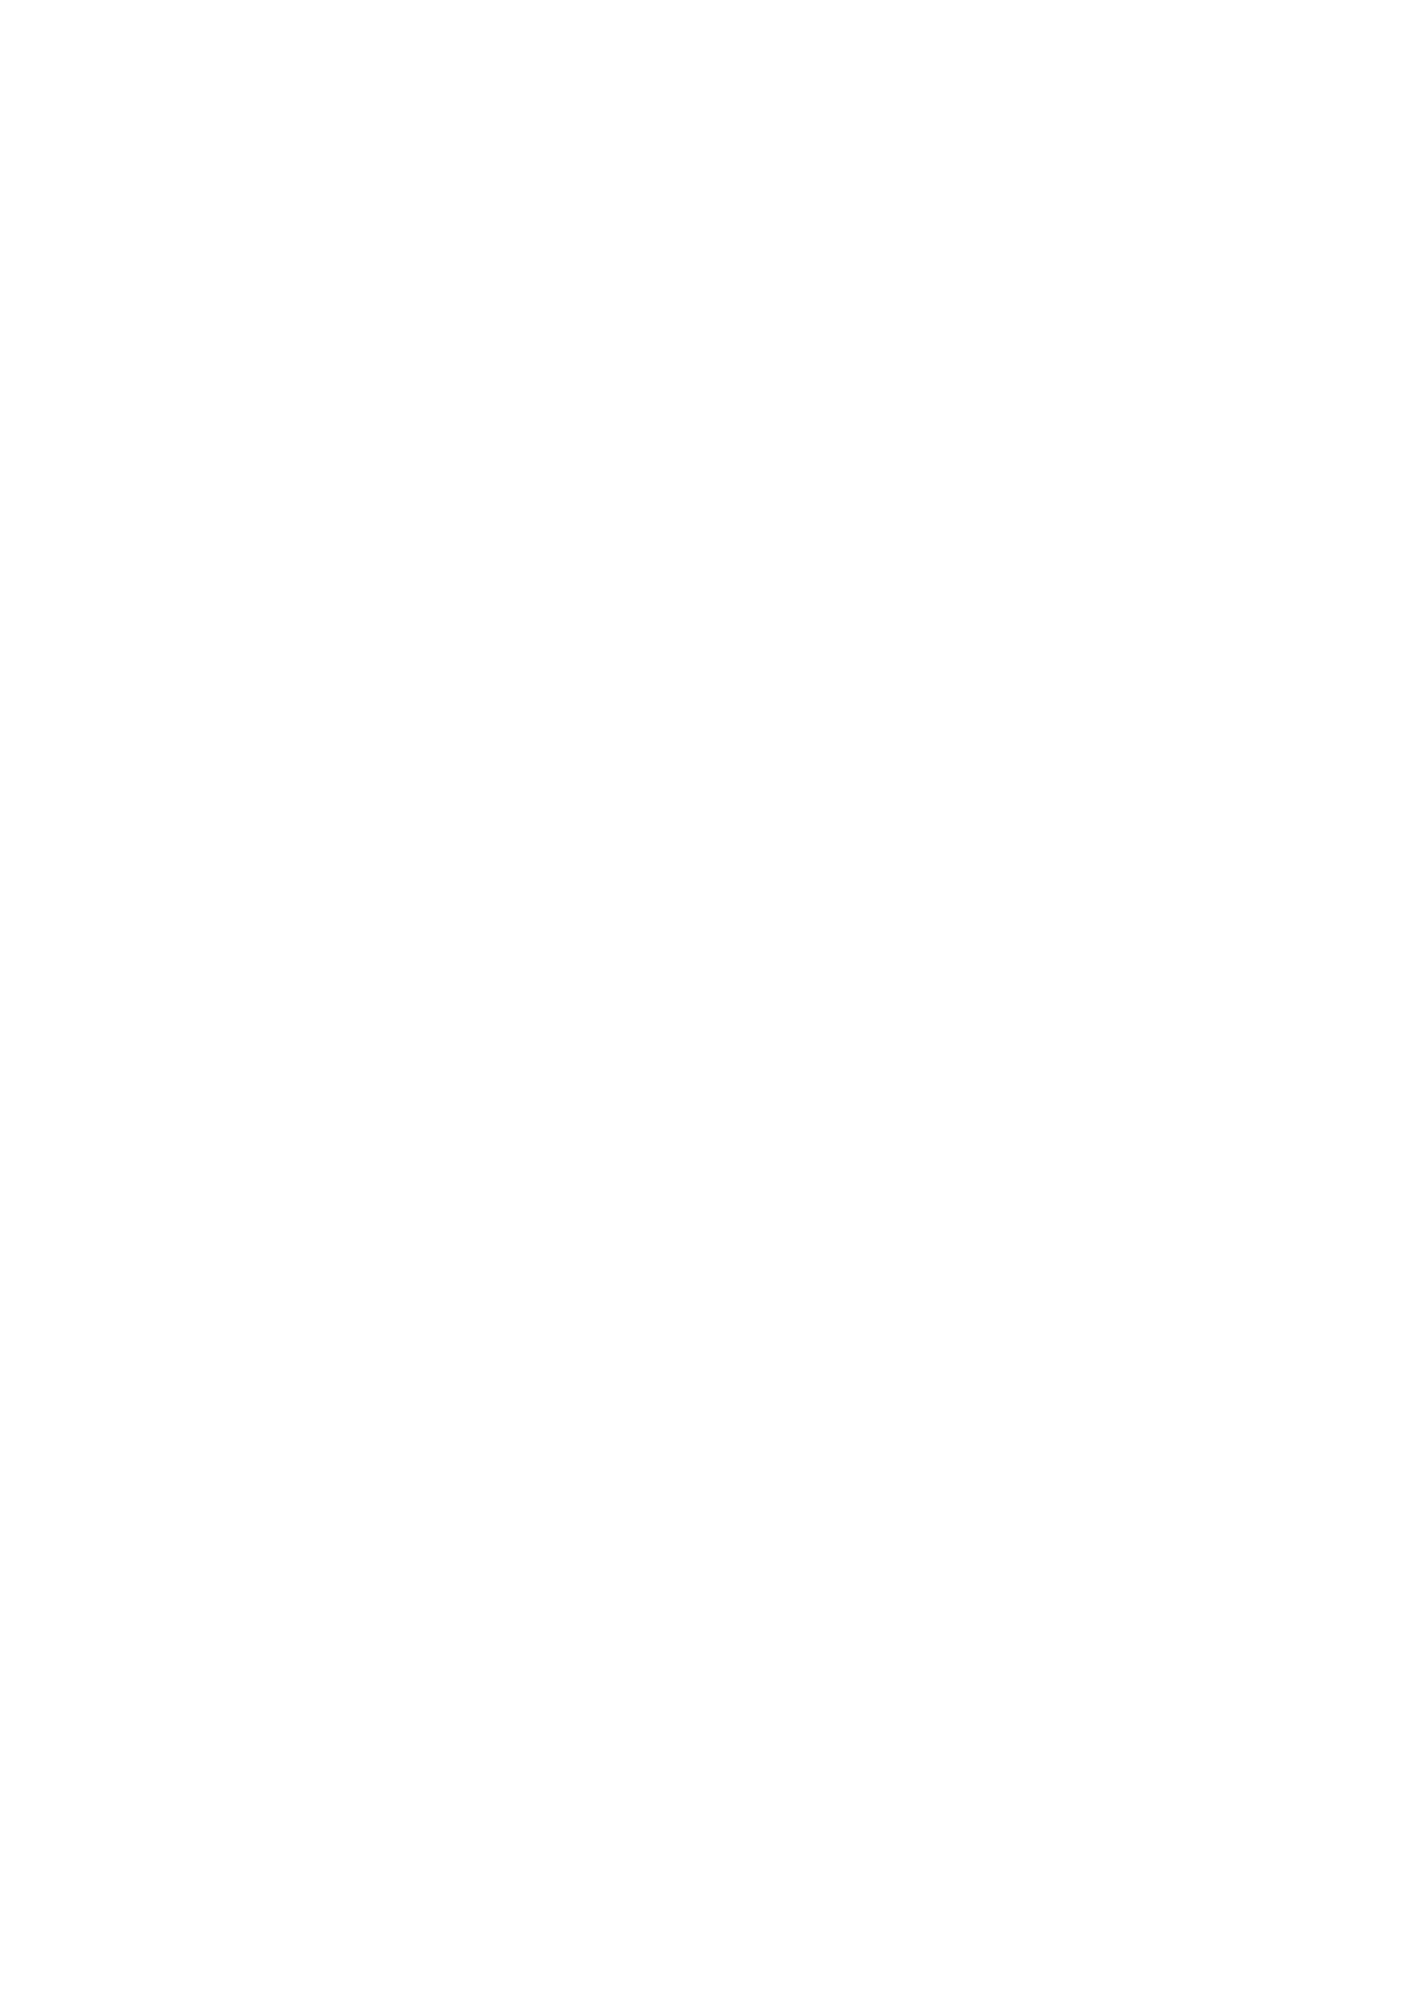 image pattern